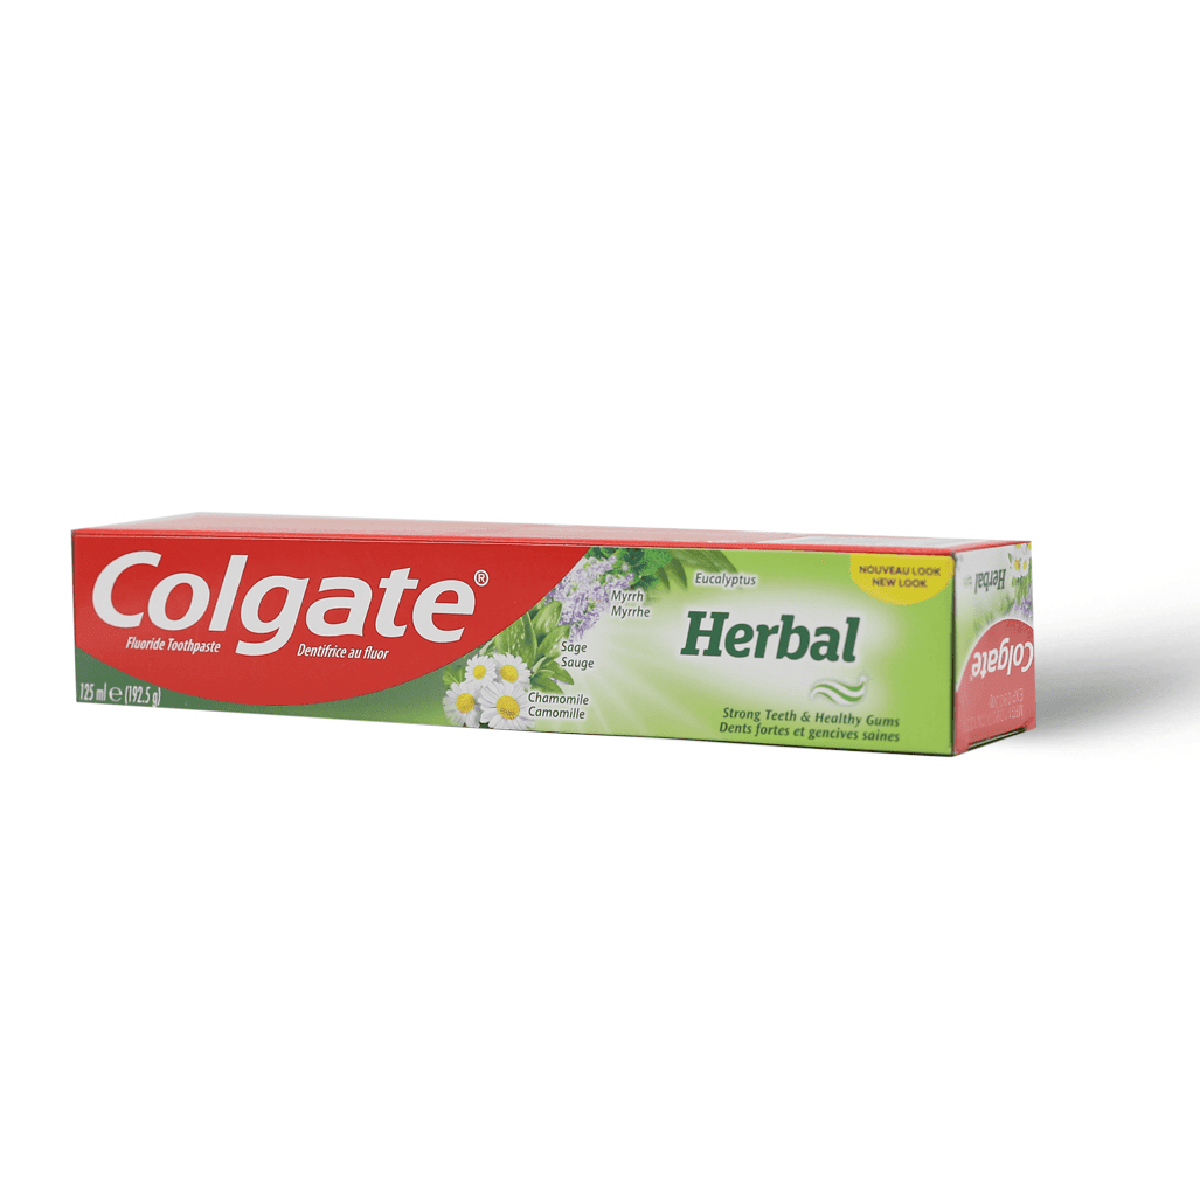 كولجيت، معجون أسنان، هيربال بتركيبة الأعشاب - 125 مل